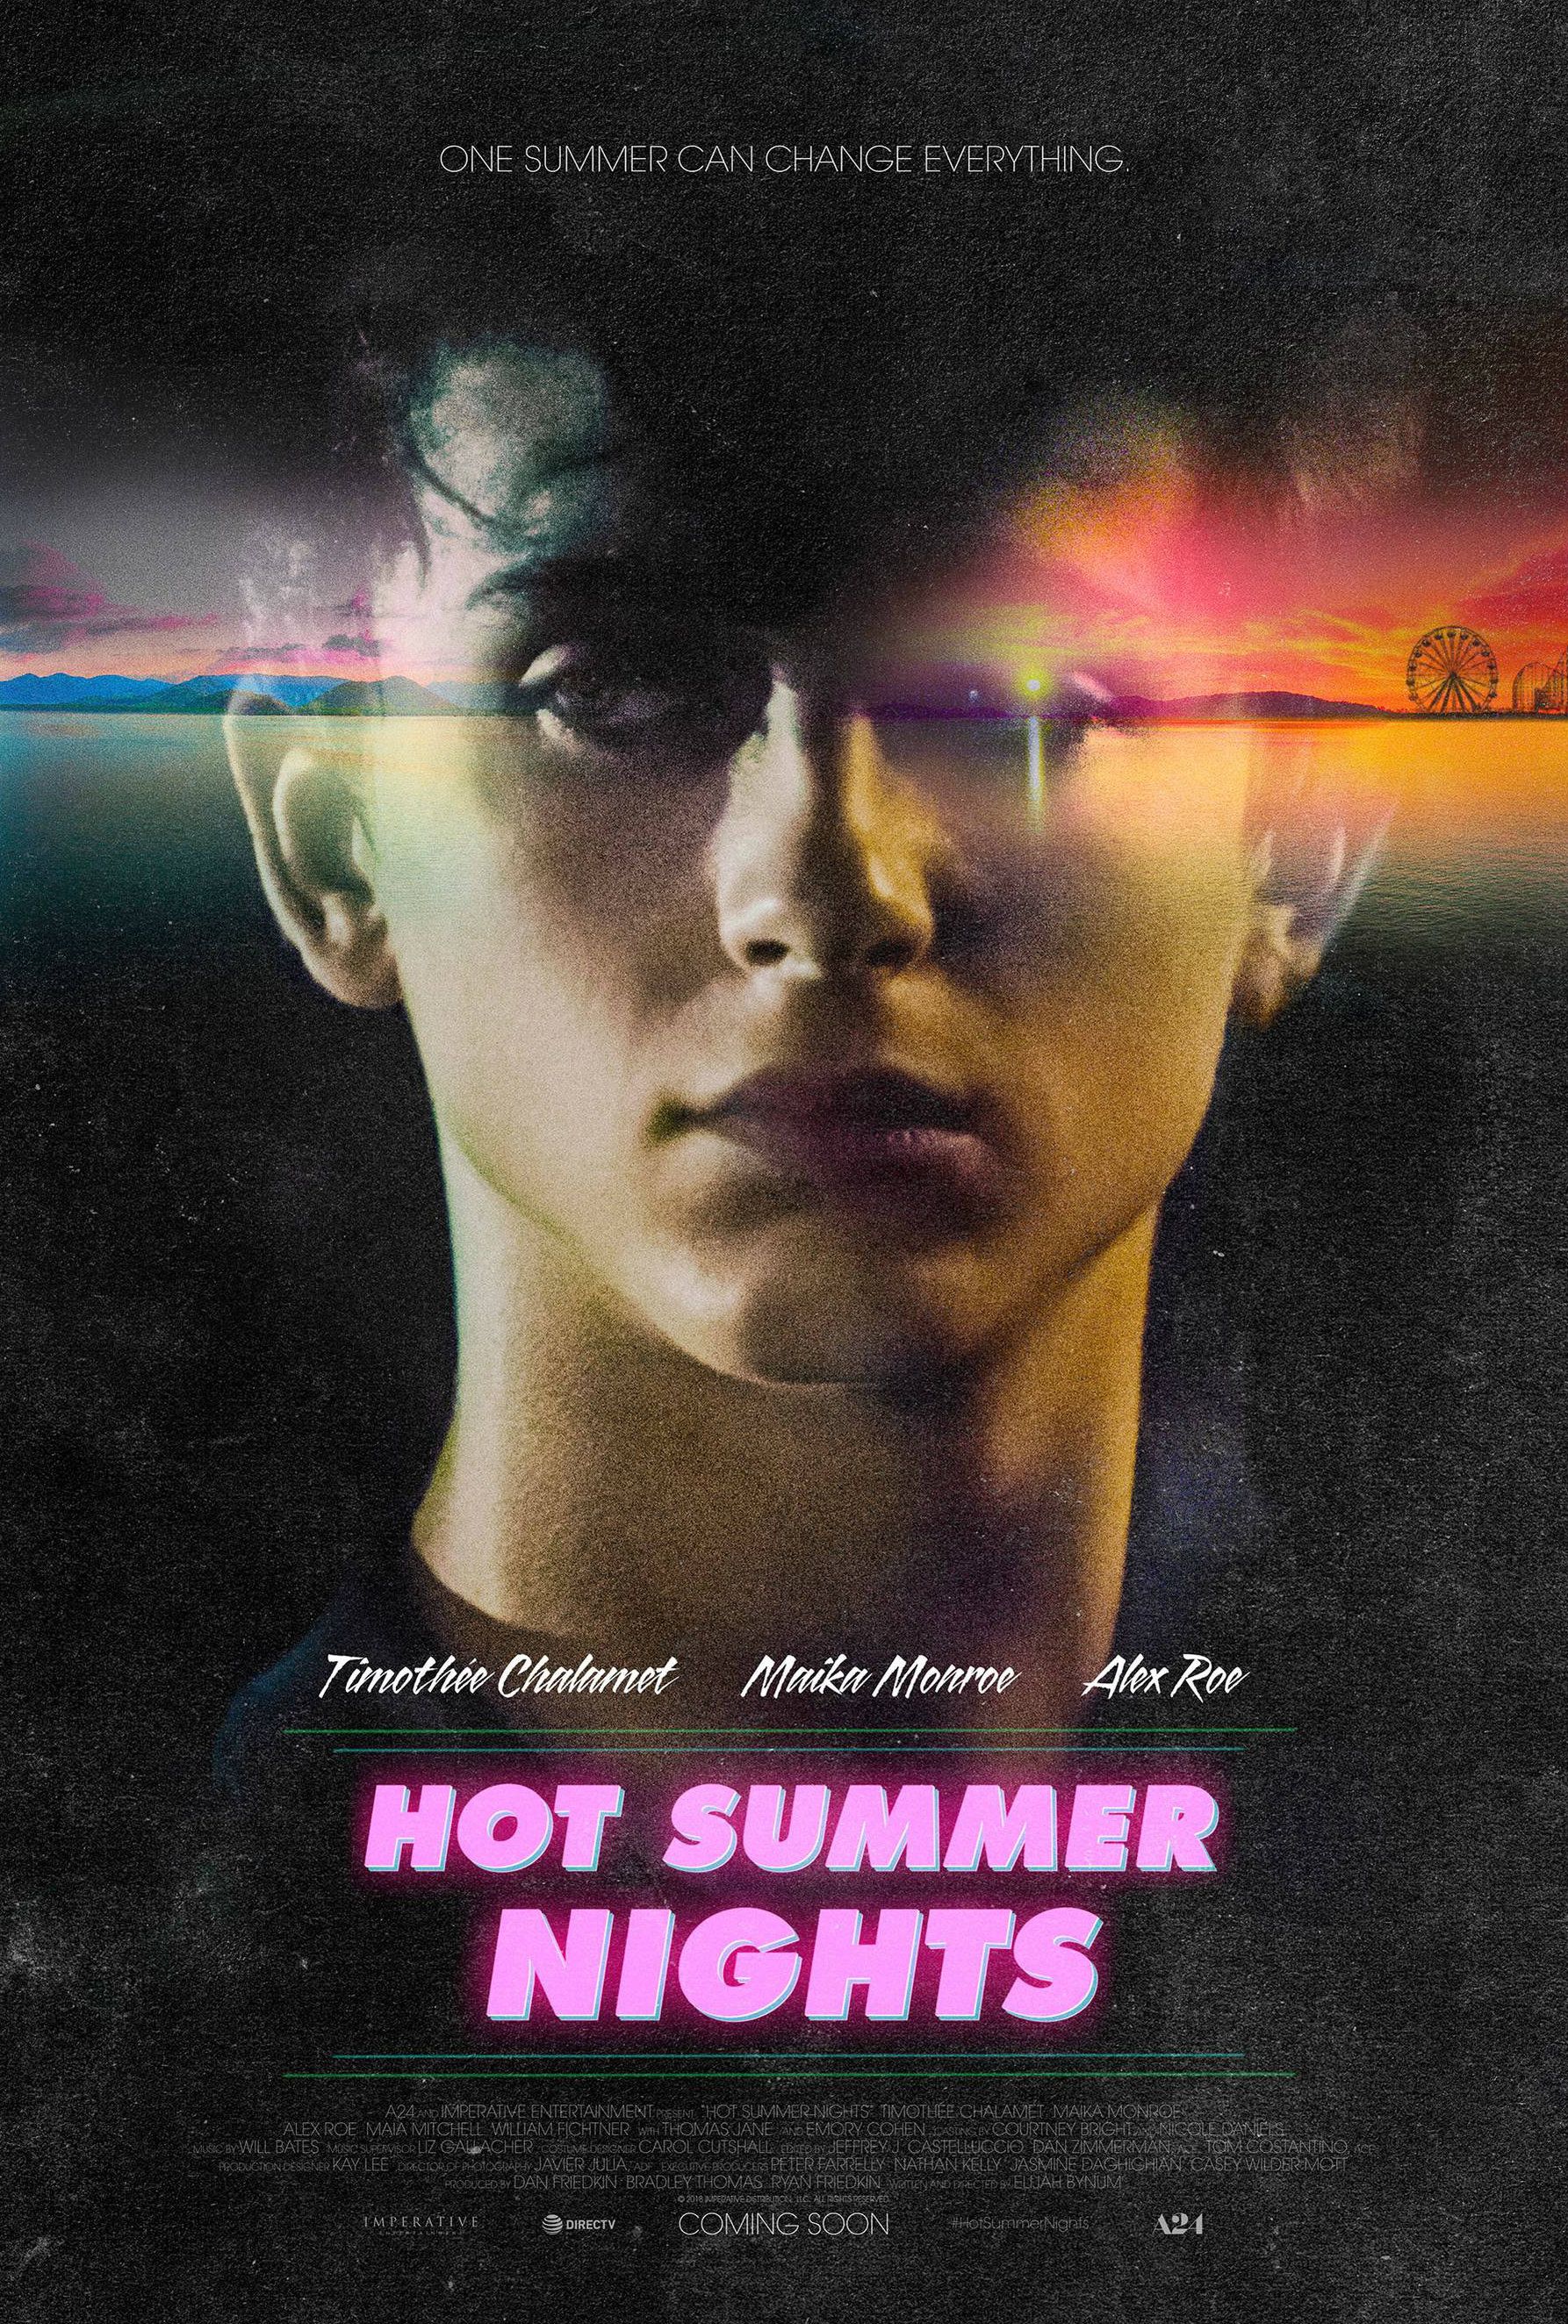 Timothée Chalamet Sells Weed in Hot Summer Nights Trailer